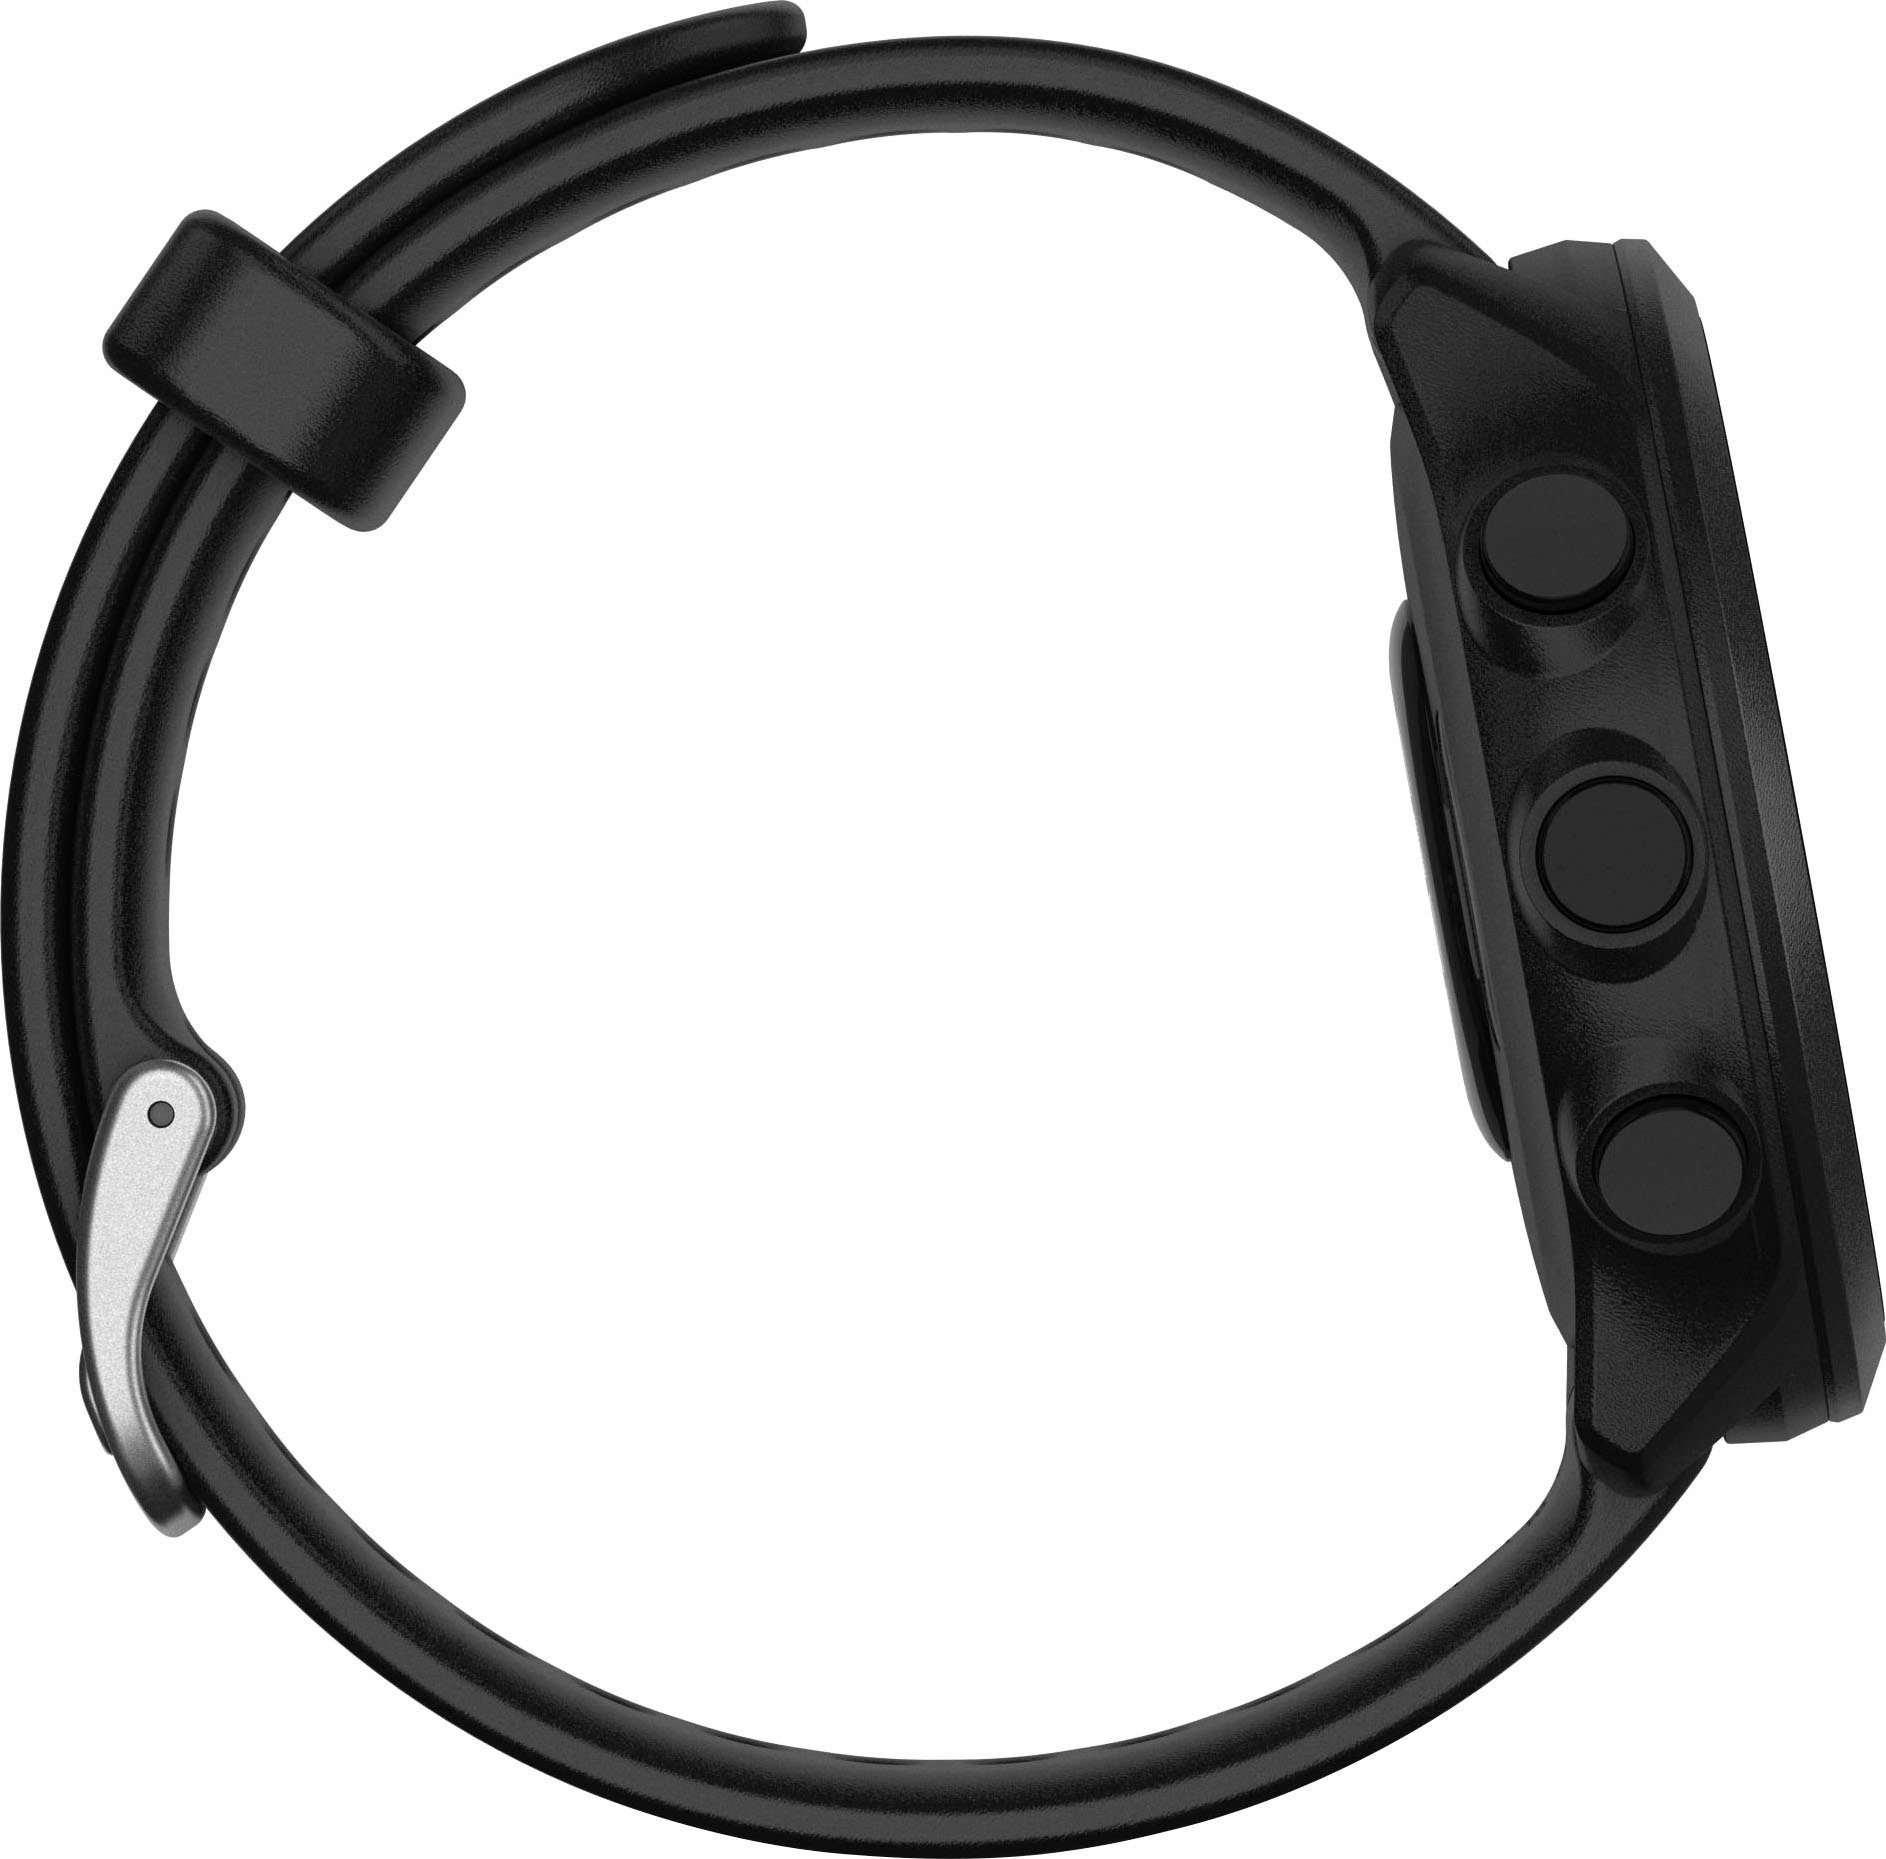 Garmin FORERUNNER schwarz Garmin), GPS-Laufuhr | Zoll, Smartwatch (2,64 cm/1,04 55 Multisport- schwarz